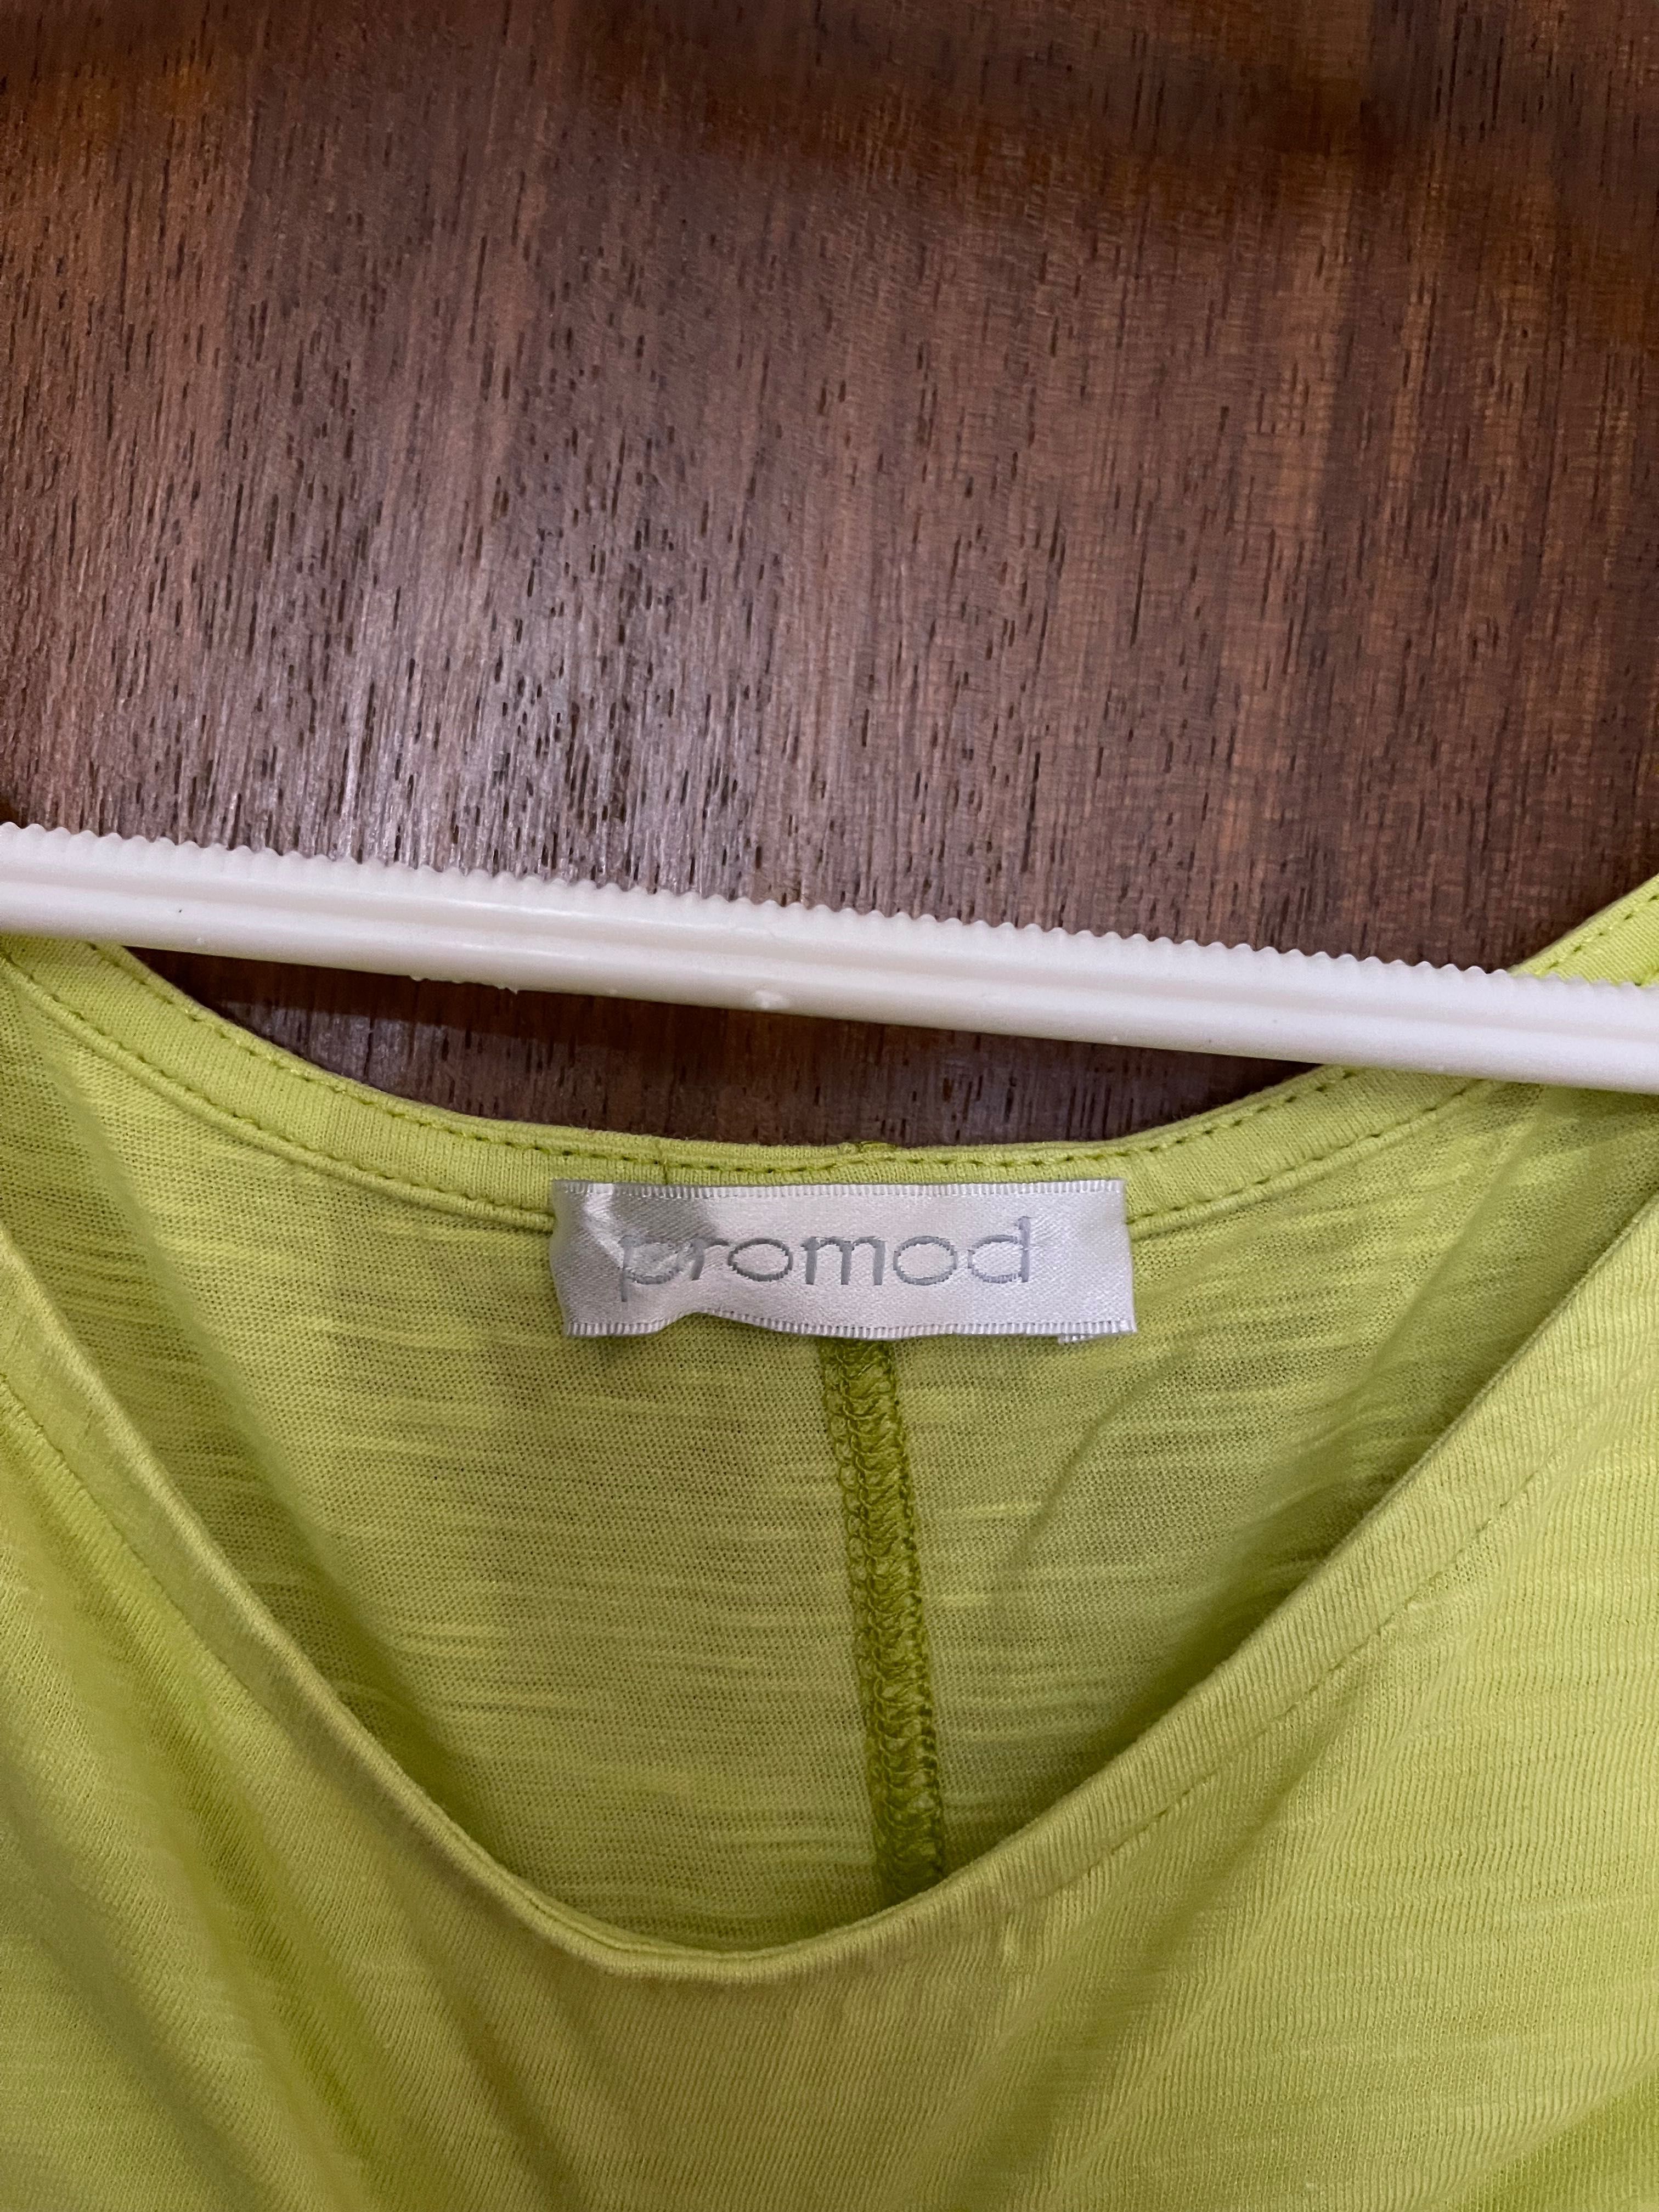 Camisola básica verde clarinho da Promod